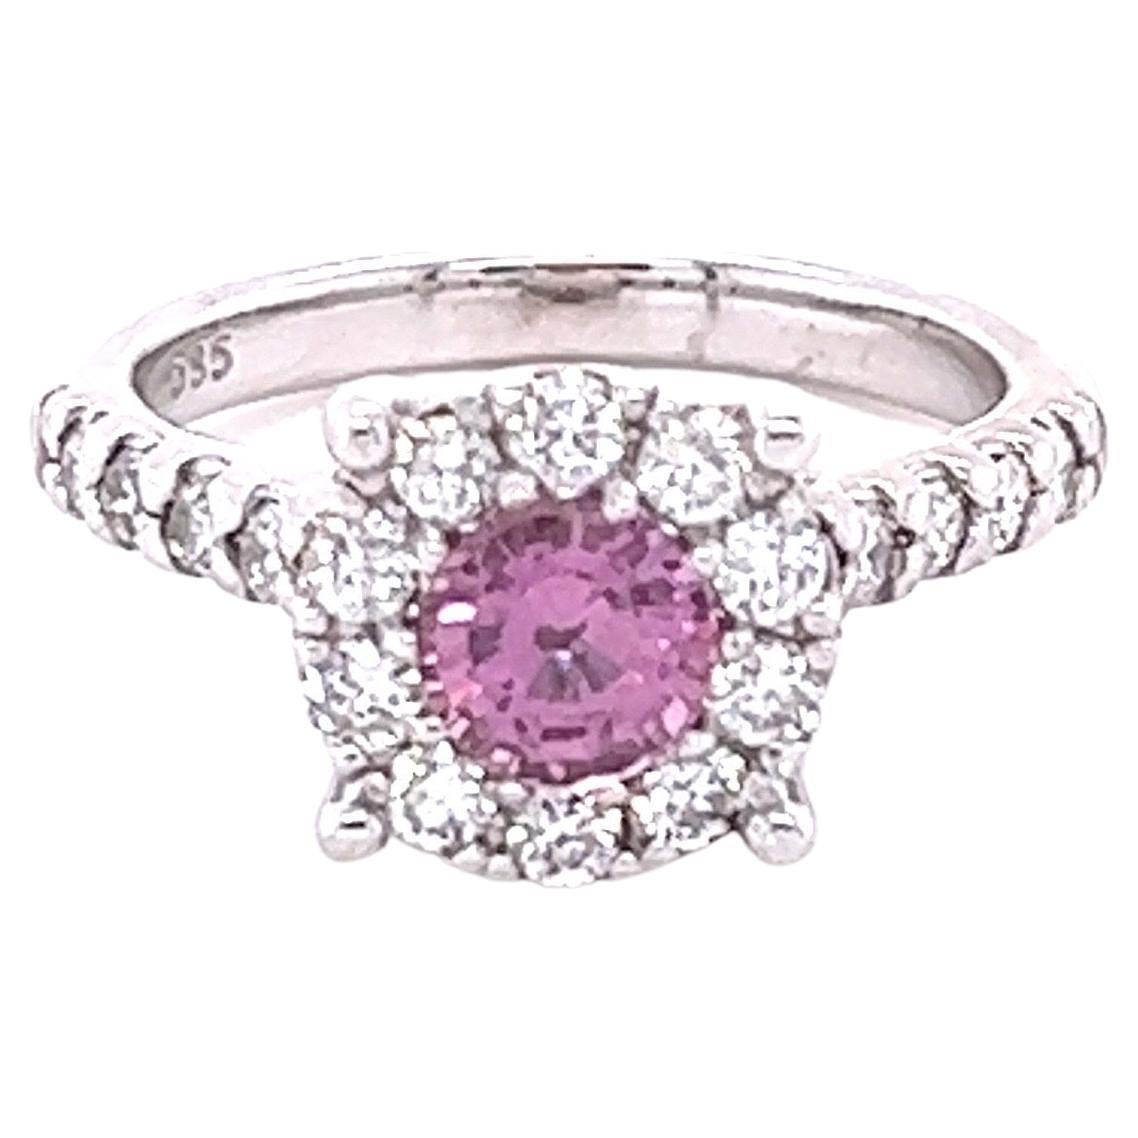 1.51 Carat Pink Sapphire Diamond 14 Karat White Gold Engagement Ring